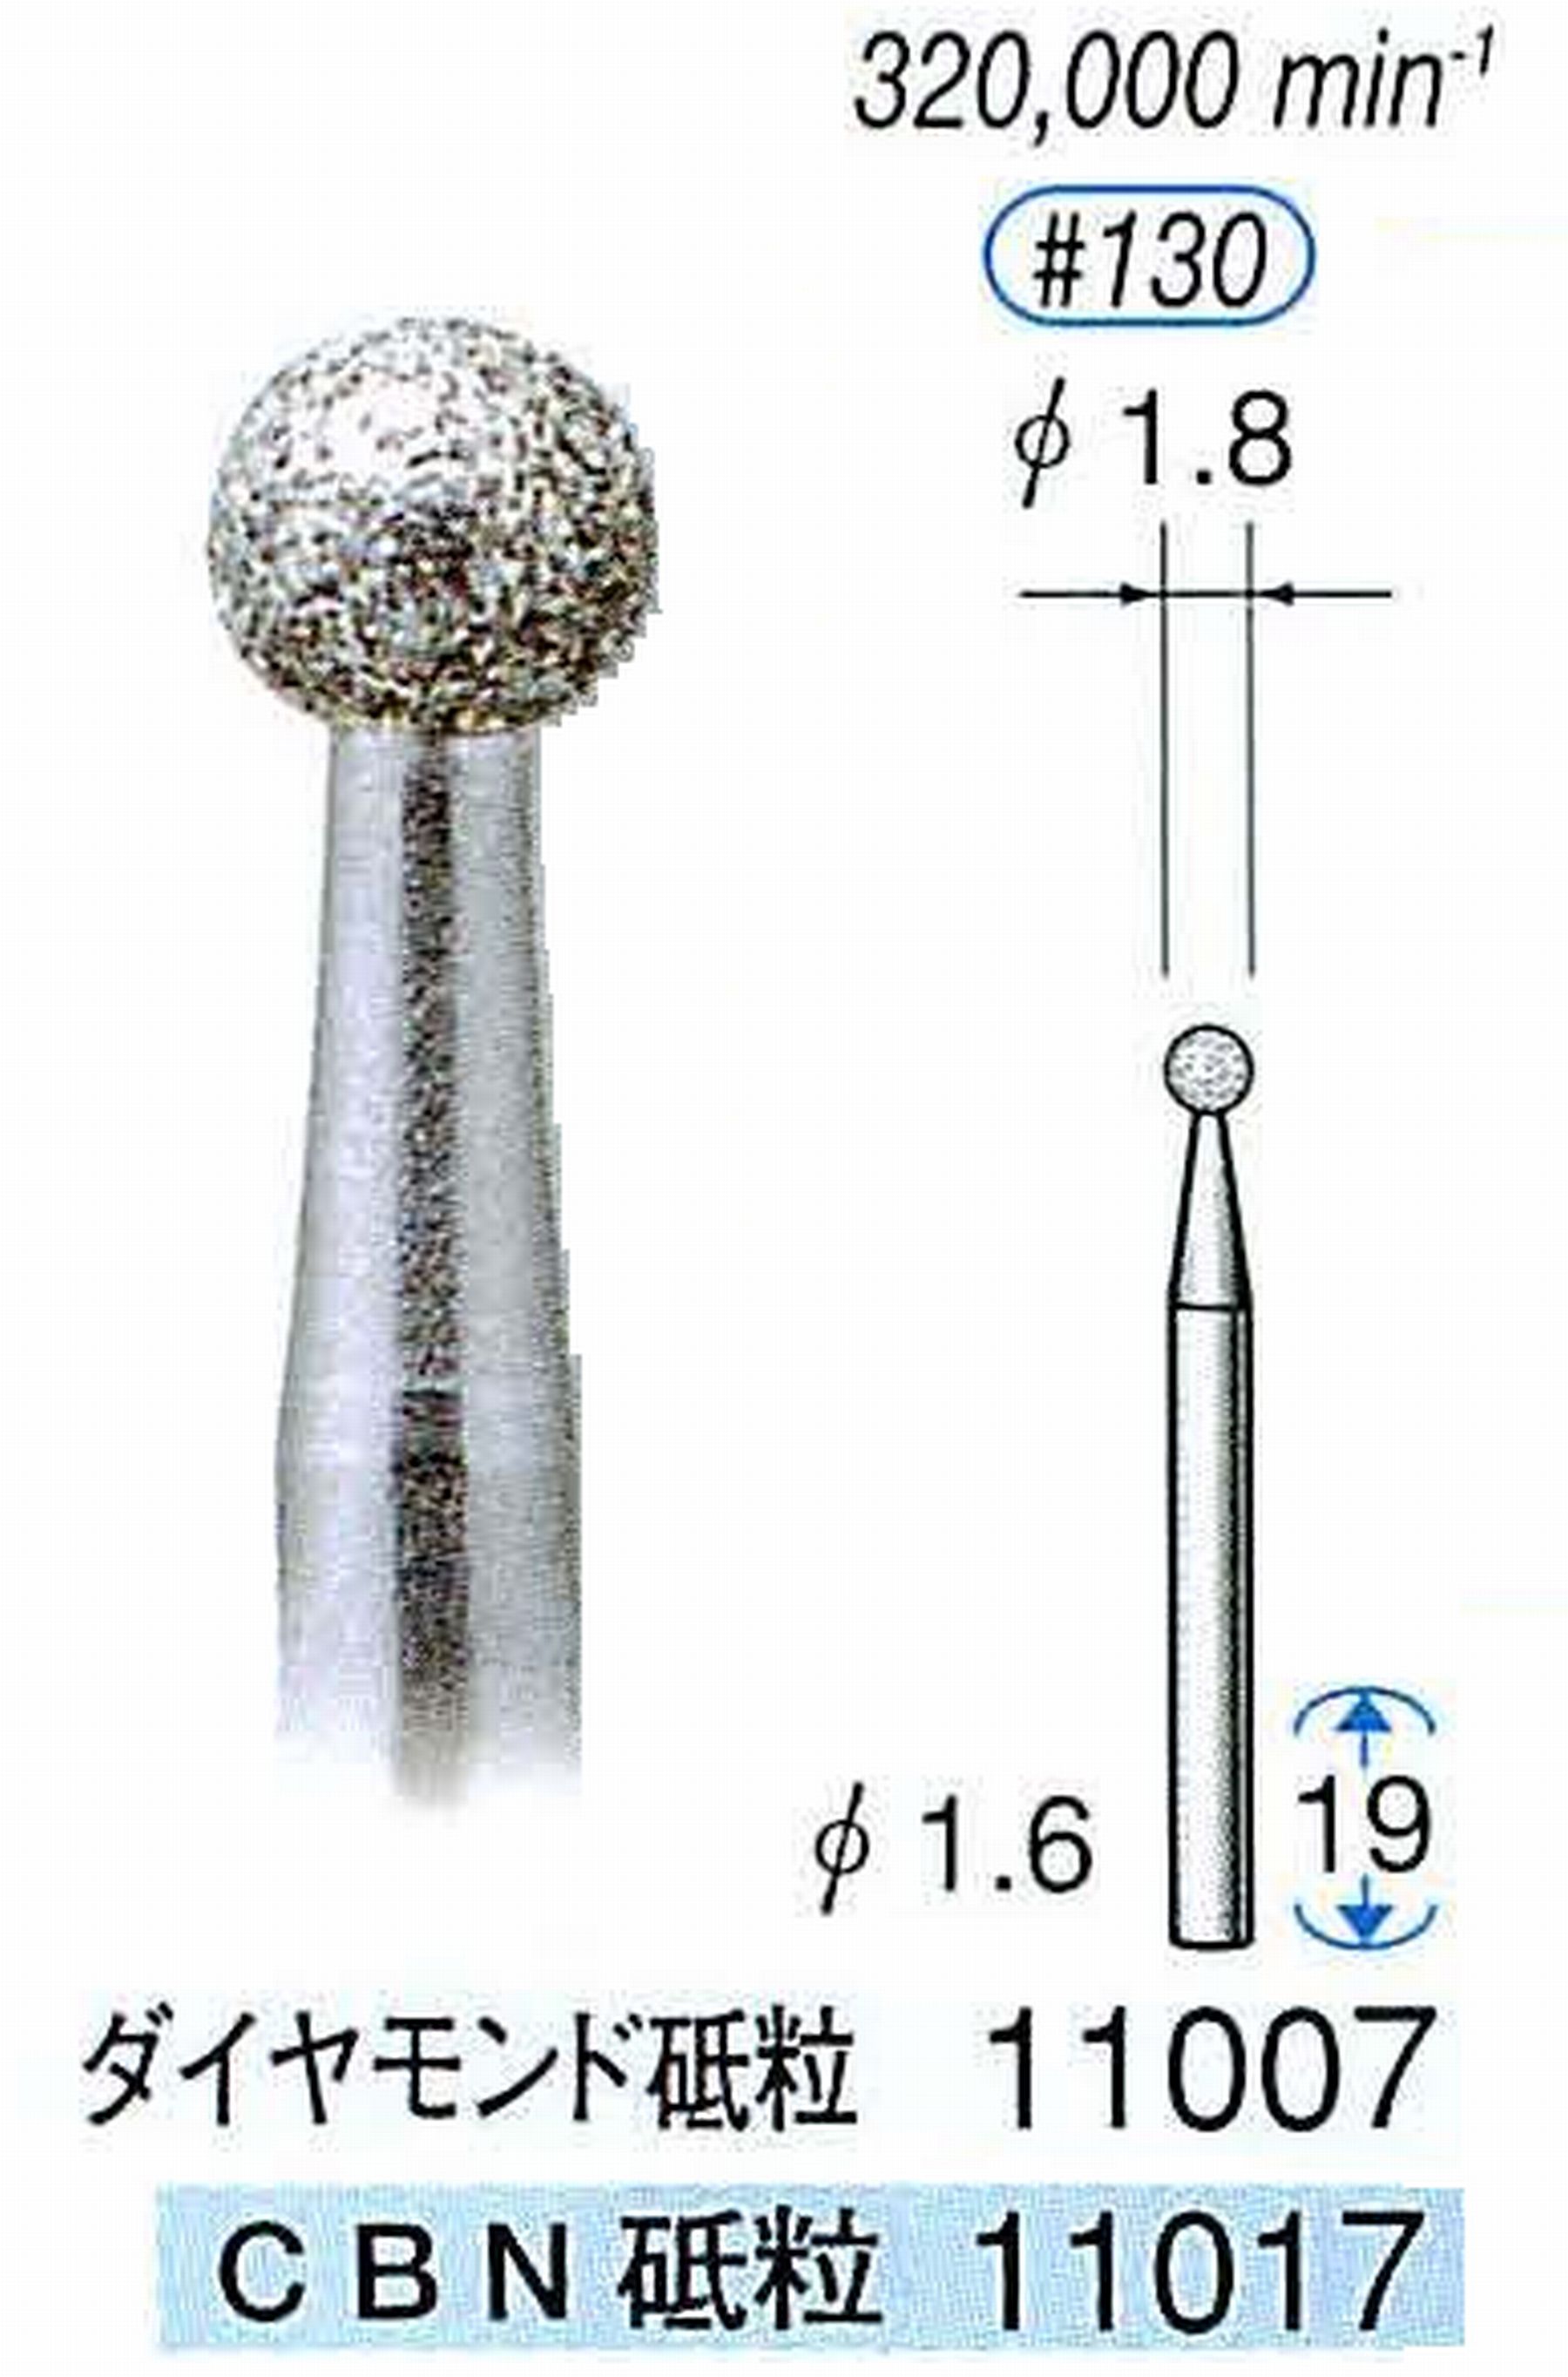 ナカニシ/NAKANISHI 電着ダイヤモンドバー(ミニチュアタイプ)ダイヤモンド砥粒 軸径(シャンク)φ1.6mm 11007